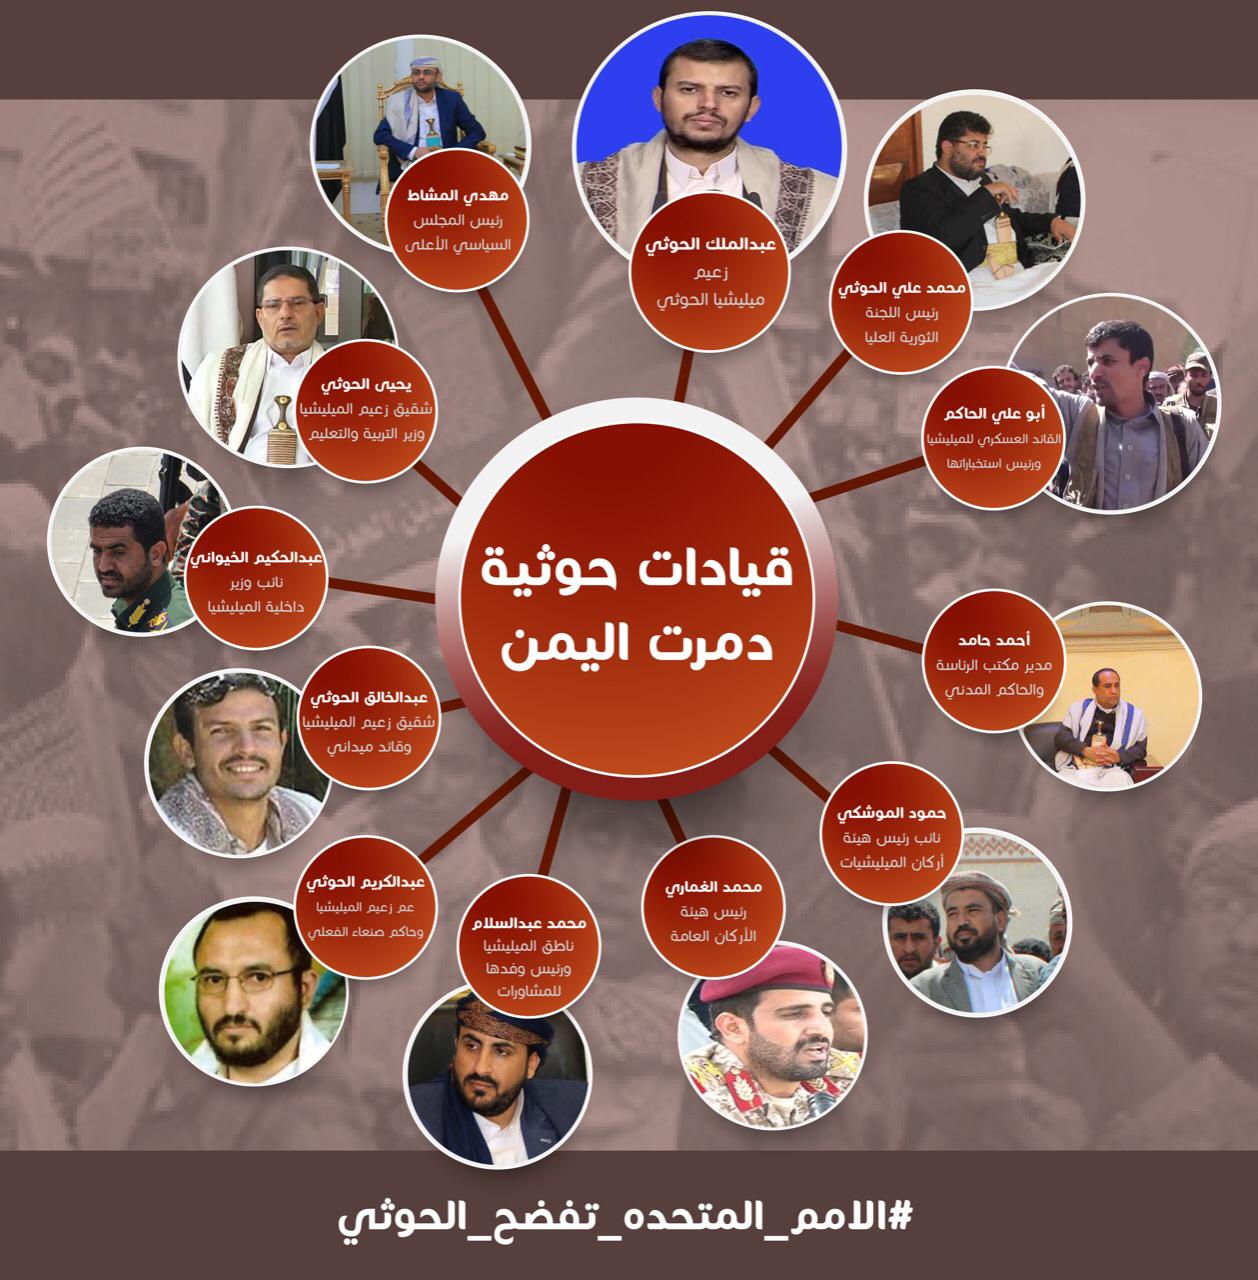 تقرير مفصل عن اتهام تقرير لجنة الخبراء الدوليين لجماعة الحوثي بالعبث بالاقتصاد اليمني